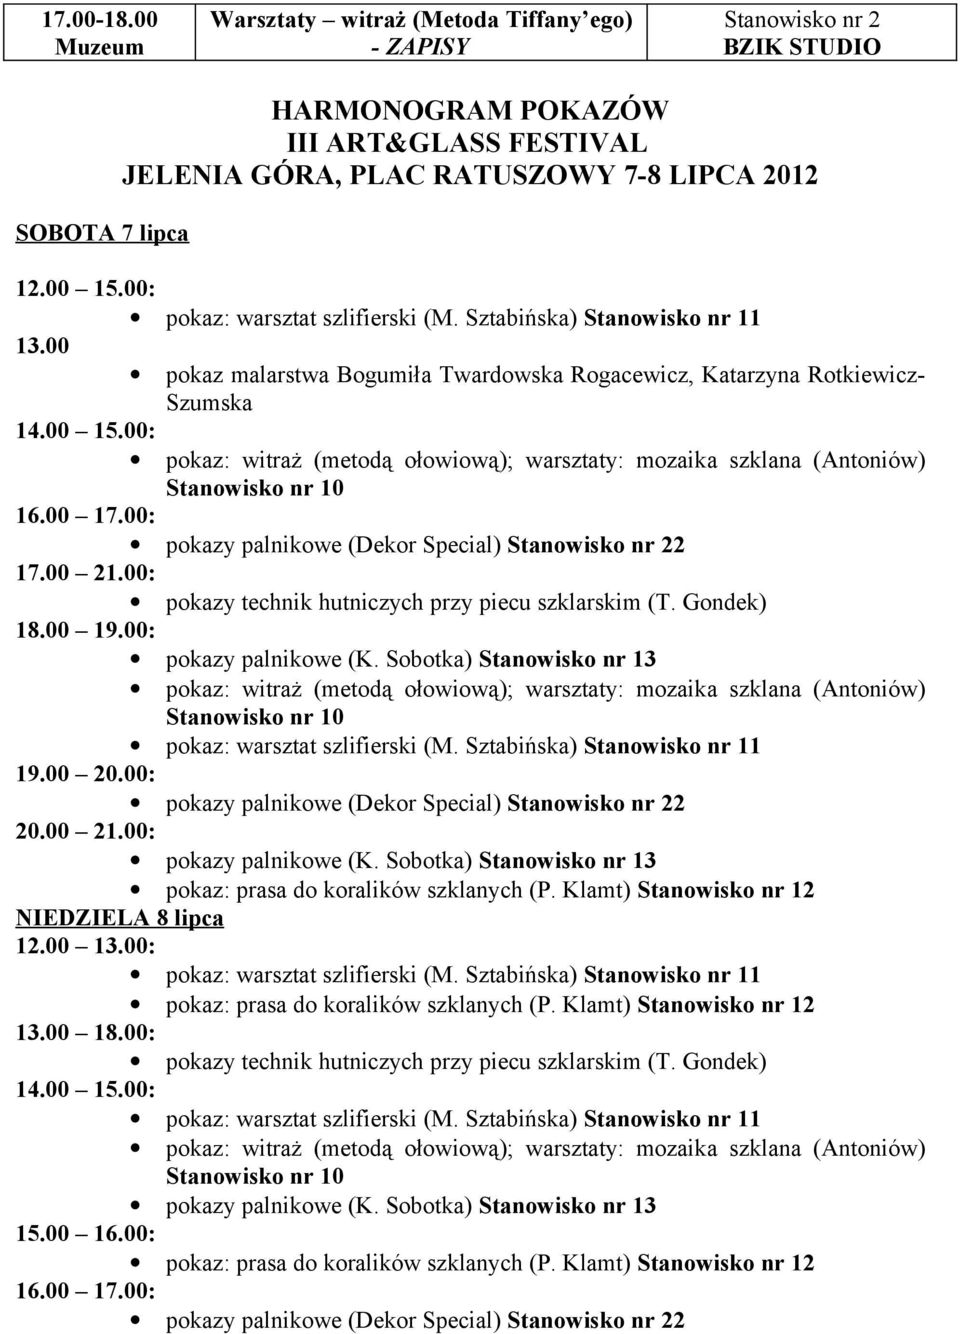 00: pokazy palnikowe (Dekor Special) 2 17.00 21.00: pokazy technik hutniczych przy piecu szklarskim (T. Gondek) 18.00 19.00: 19.